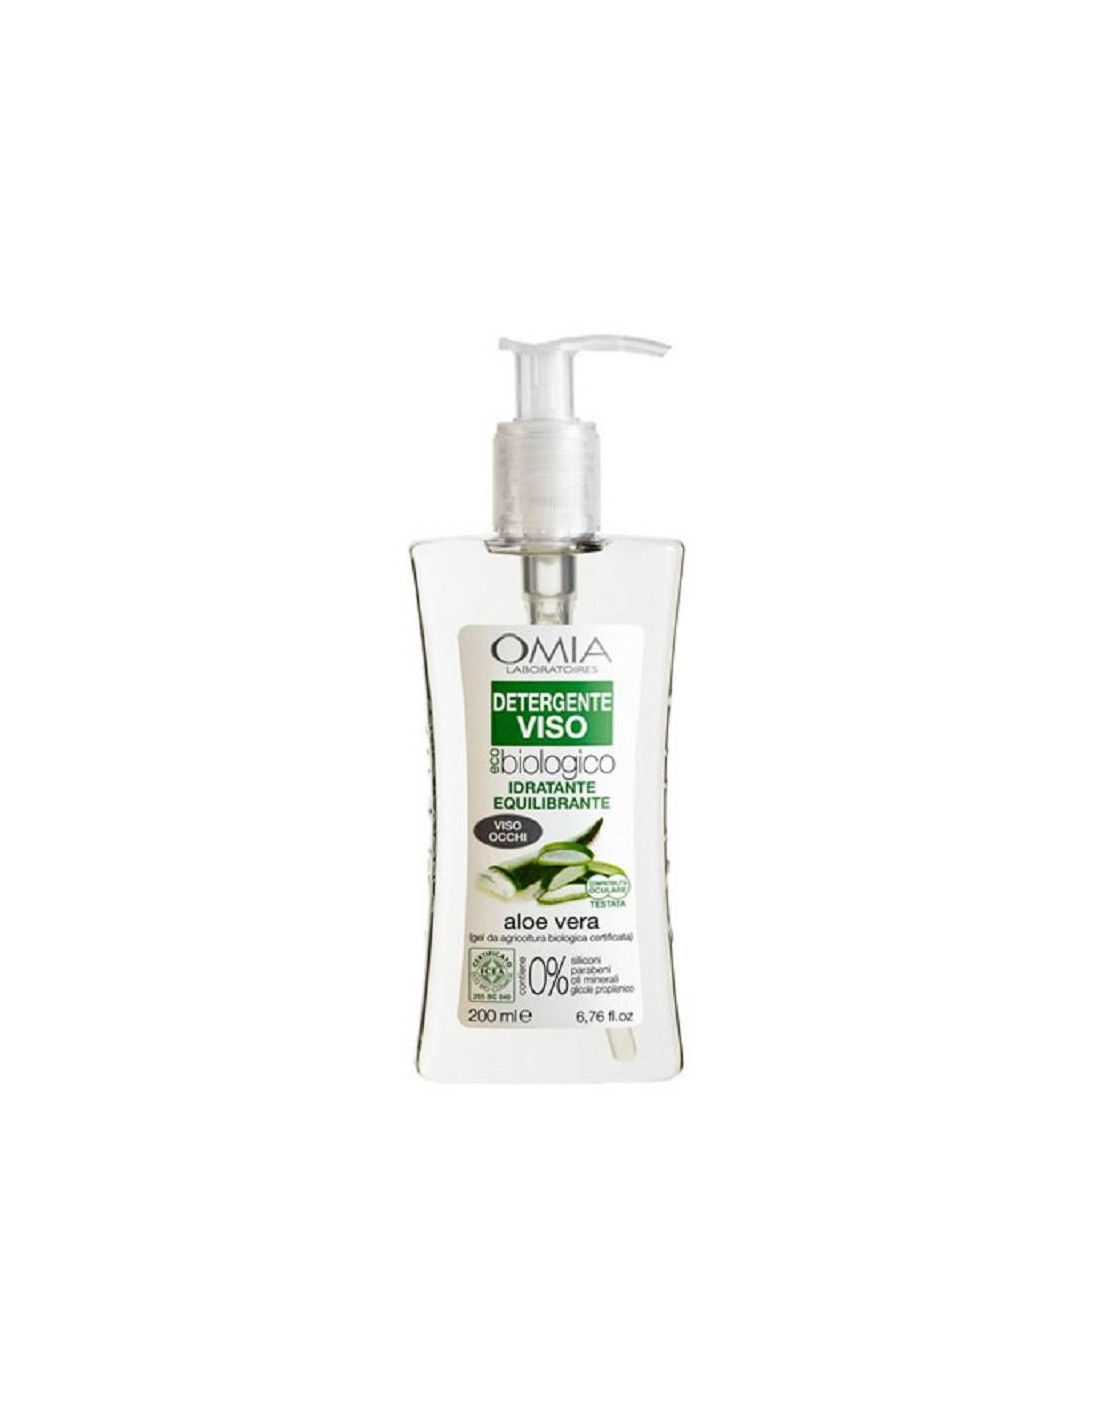 Omia Ecobiovisage Detergente Viso Aloe Vera 200Ml - Idratante Testato